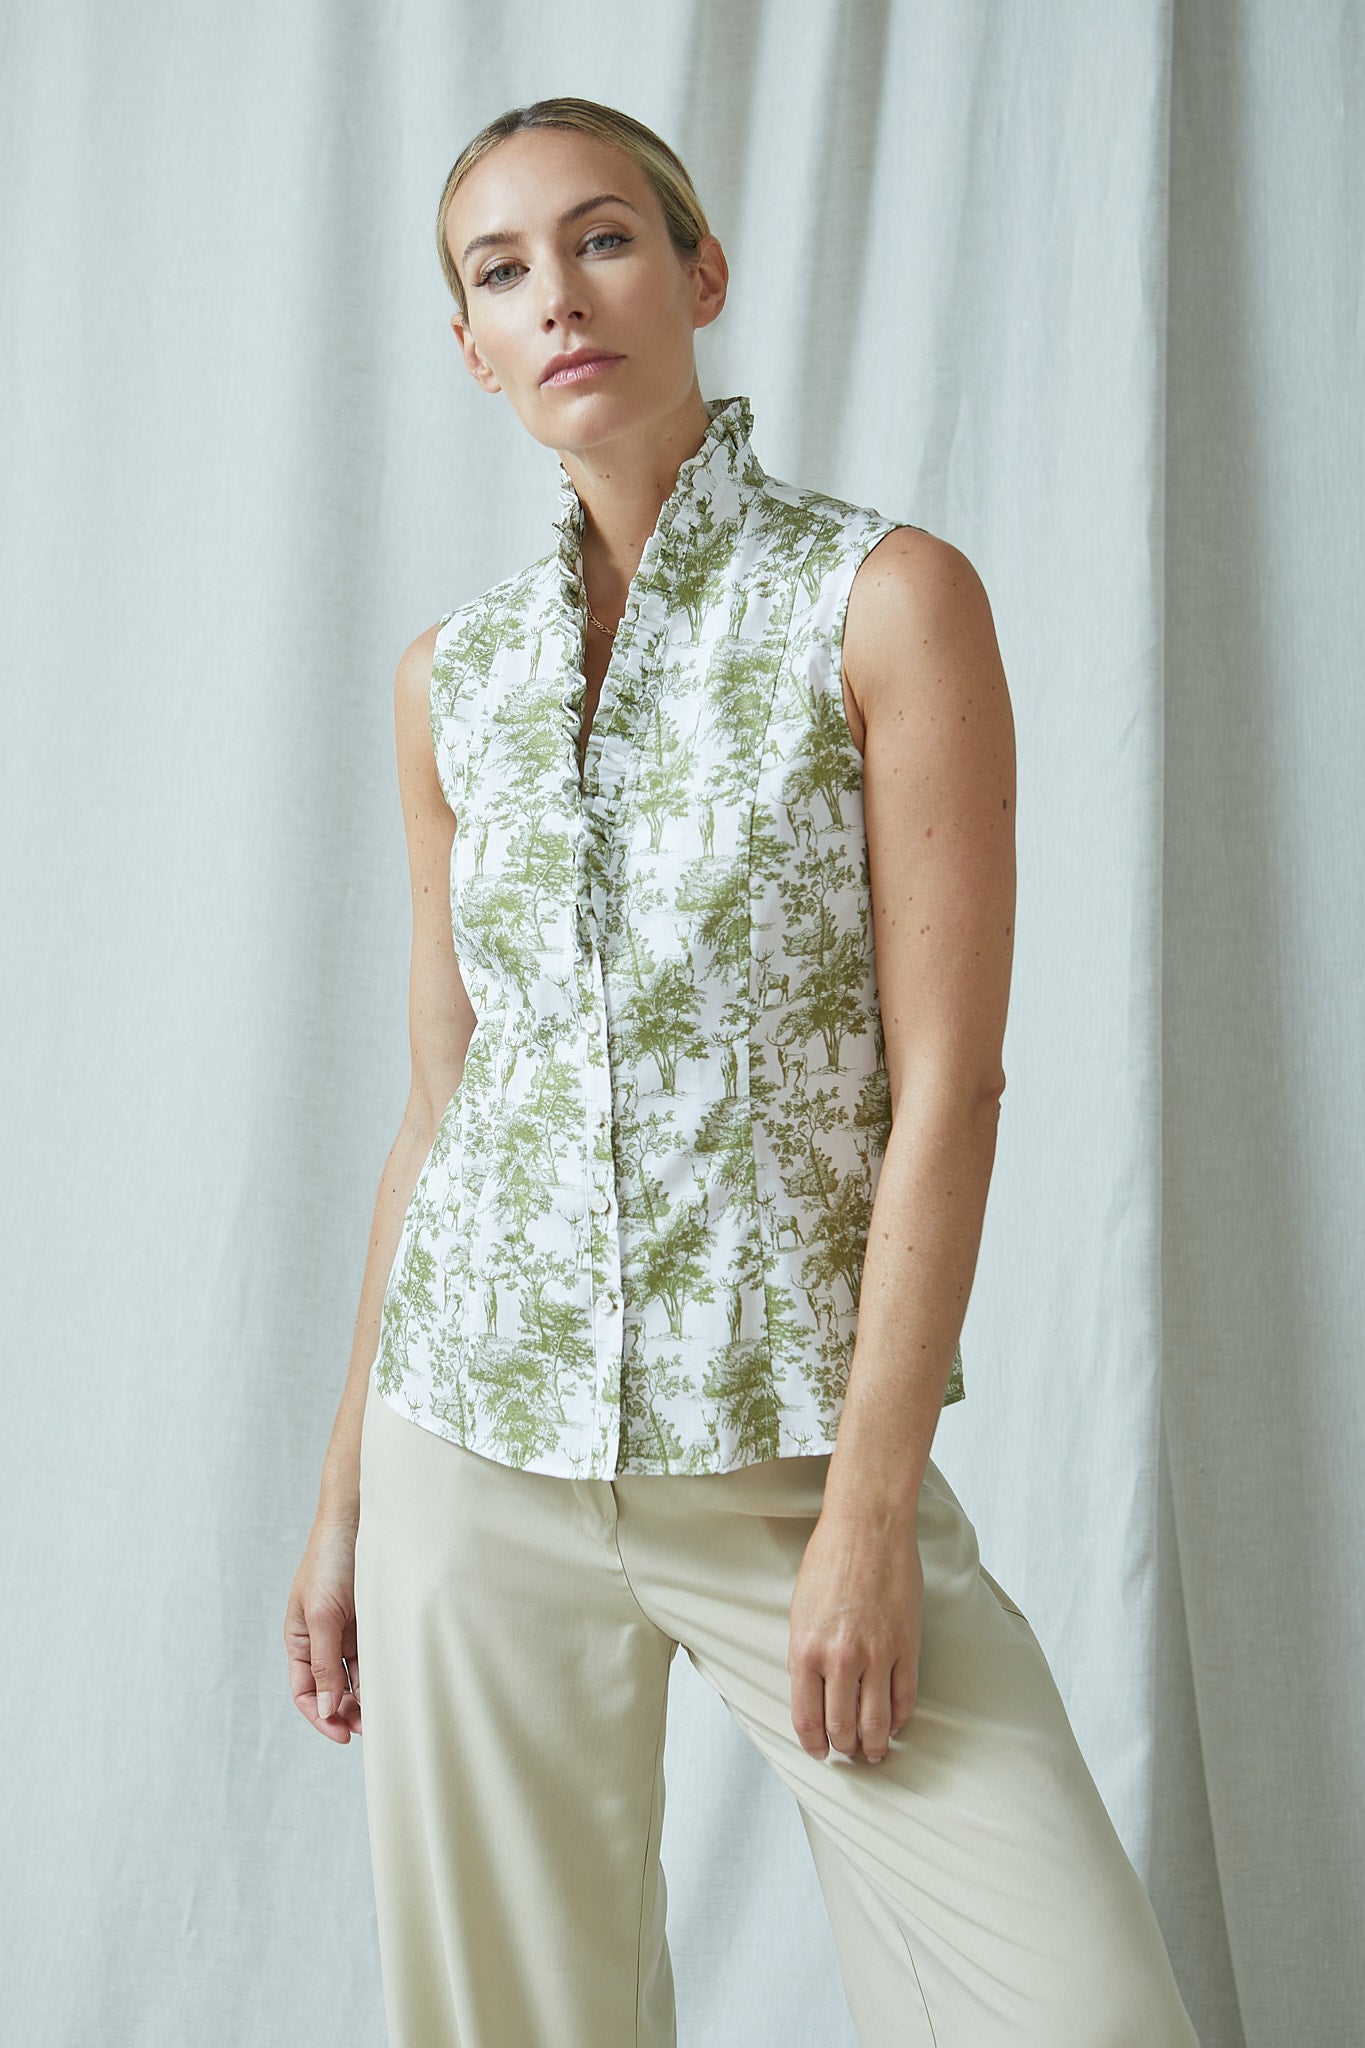 tailliert geschnittene bluse in modischem hirschdruck mit rüschendetail an ausschnitt, hirschdruck in grün auf weißem grund, wallmann